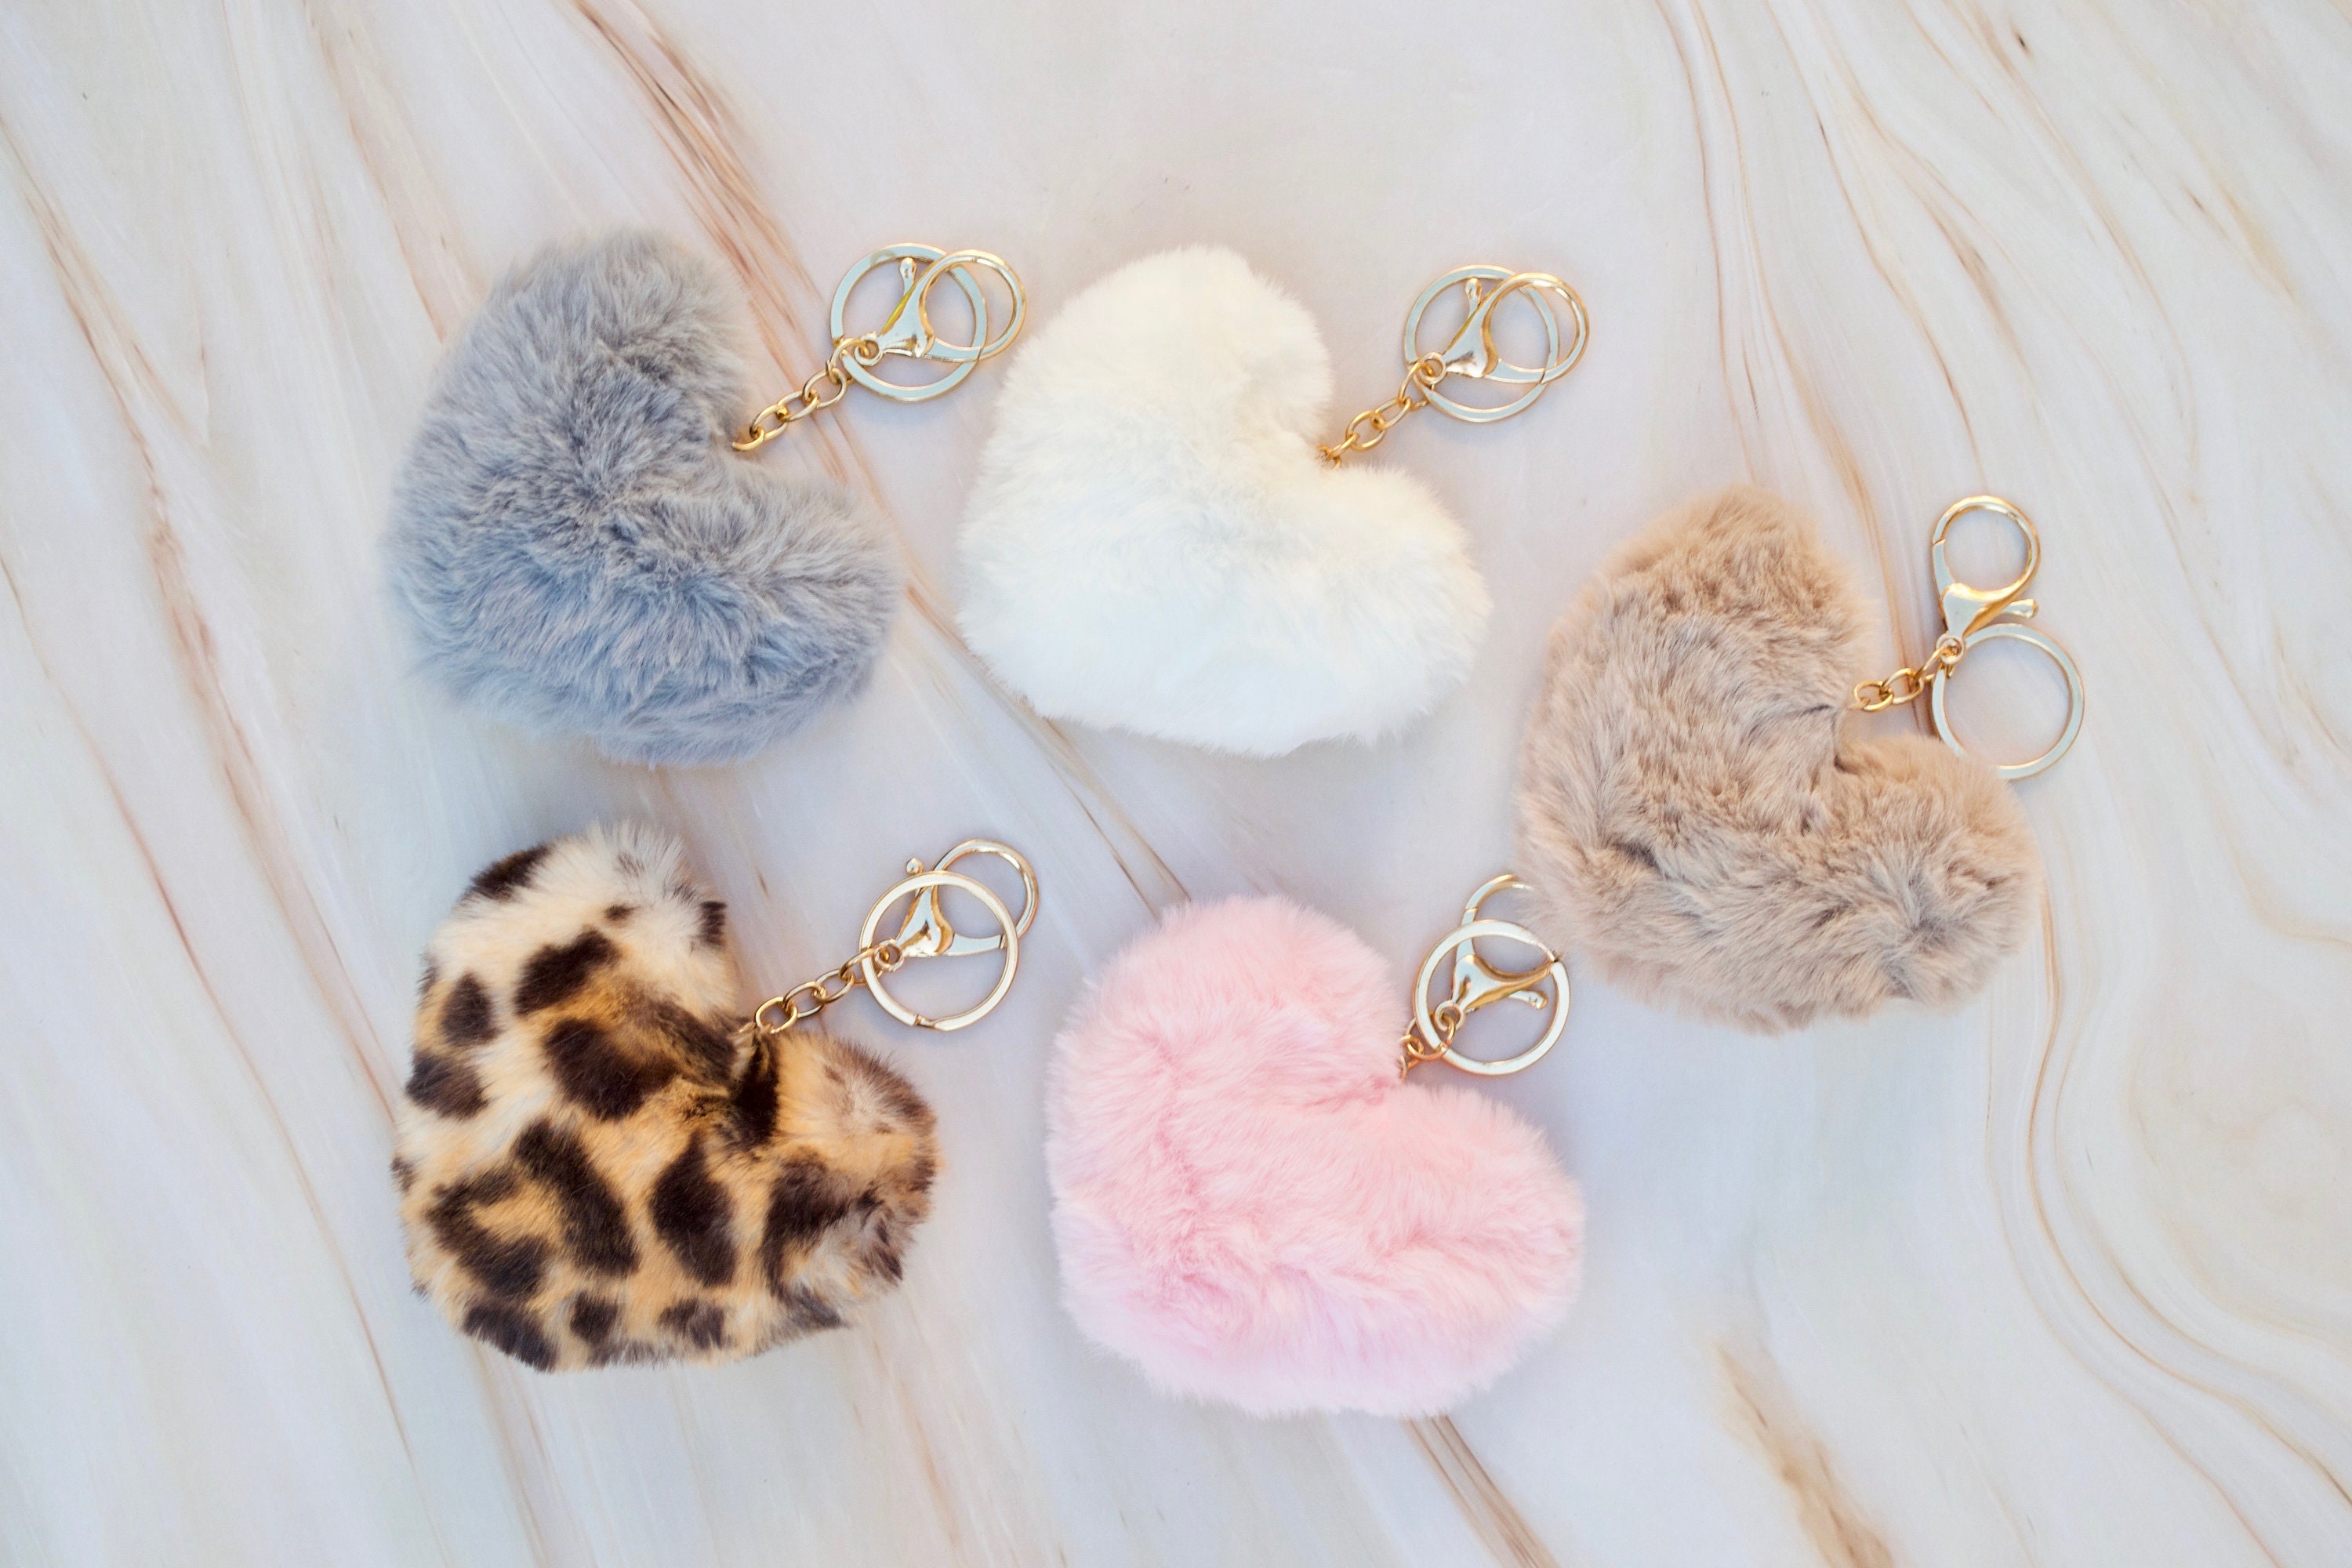 Pom Pom Keychain Leopard Print Key Ring Fluffy Faux Fur Heart Cute Handbag  Accessorie Gift Vintage Fashion